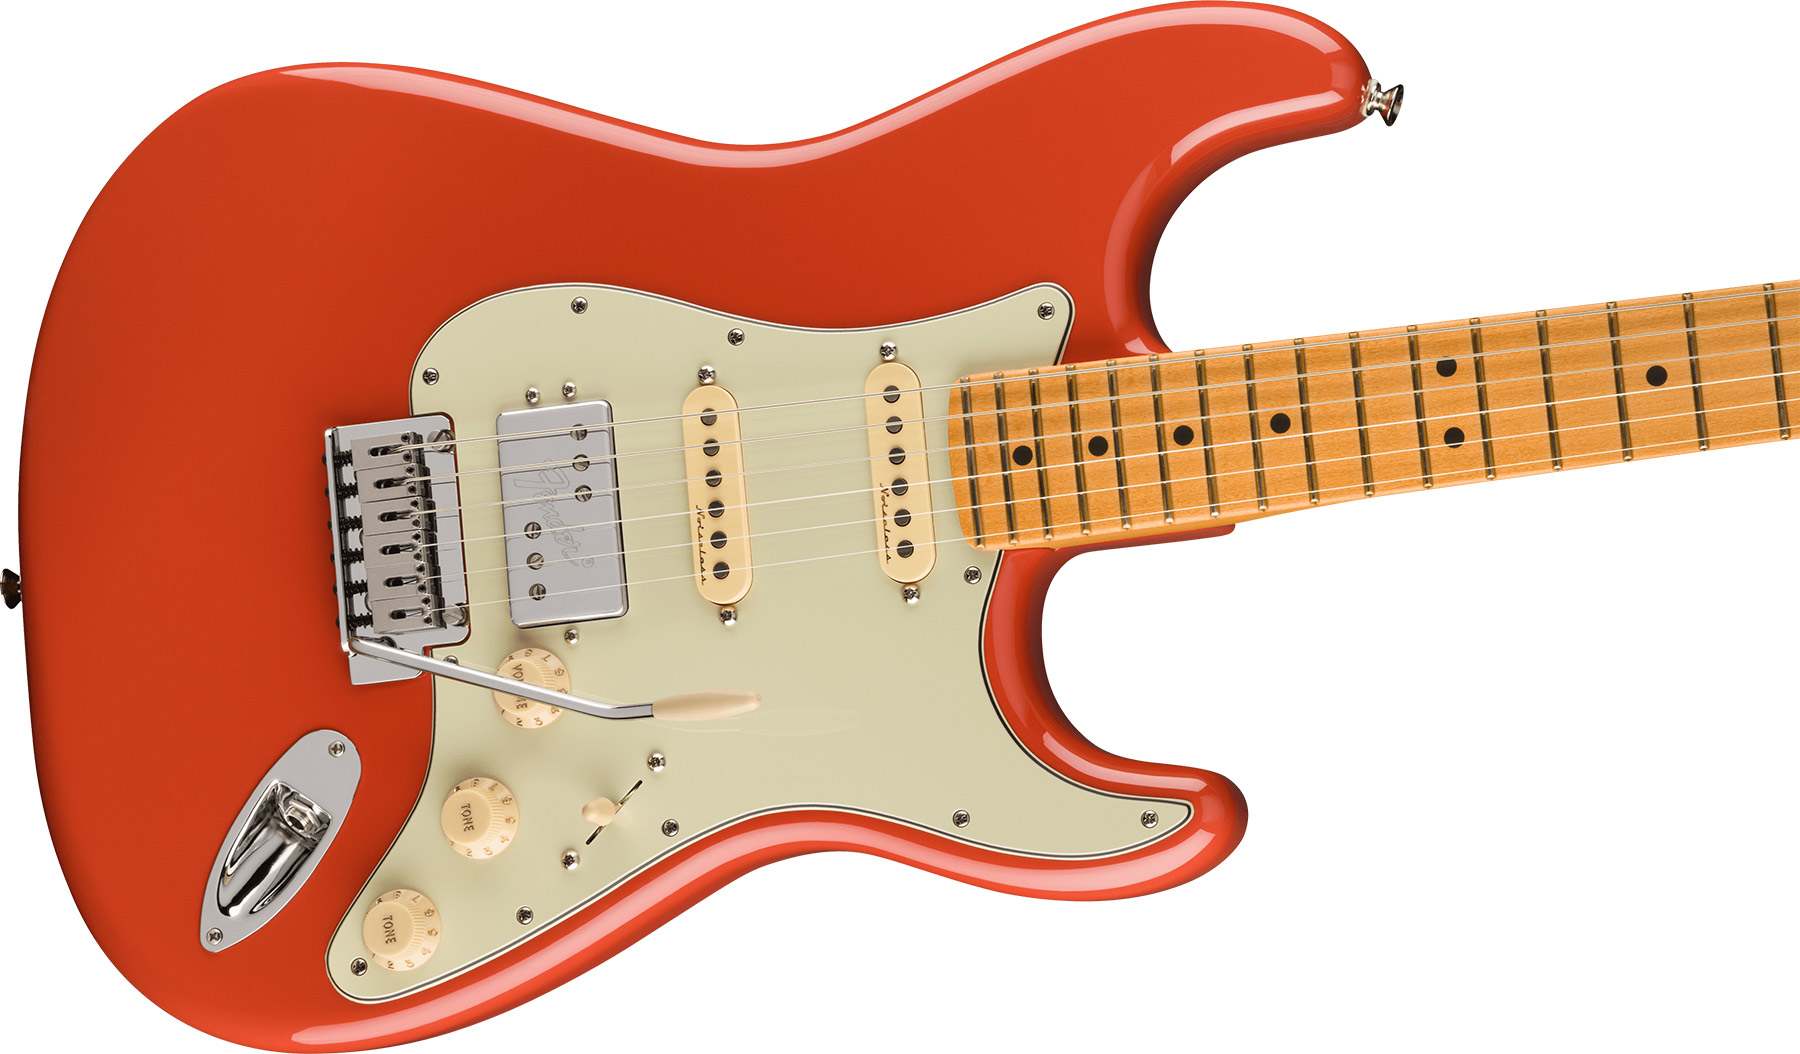 Fender Strat Player Plus Mex 2023 Hss Trem Mn - Fiesta Red - Guitarra eléctrica con forma de str. - Variation 2